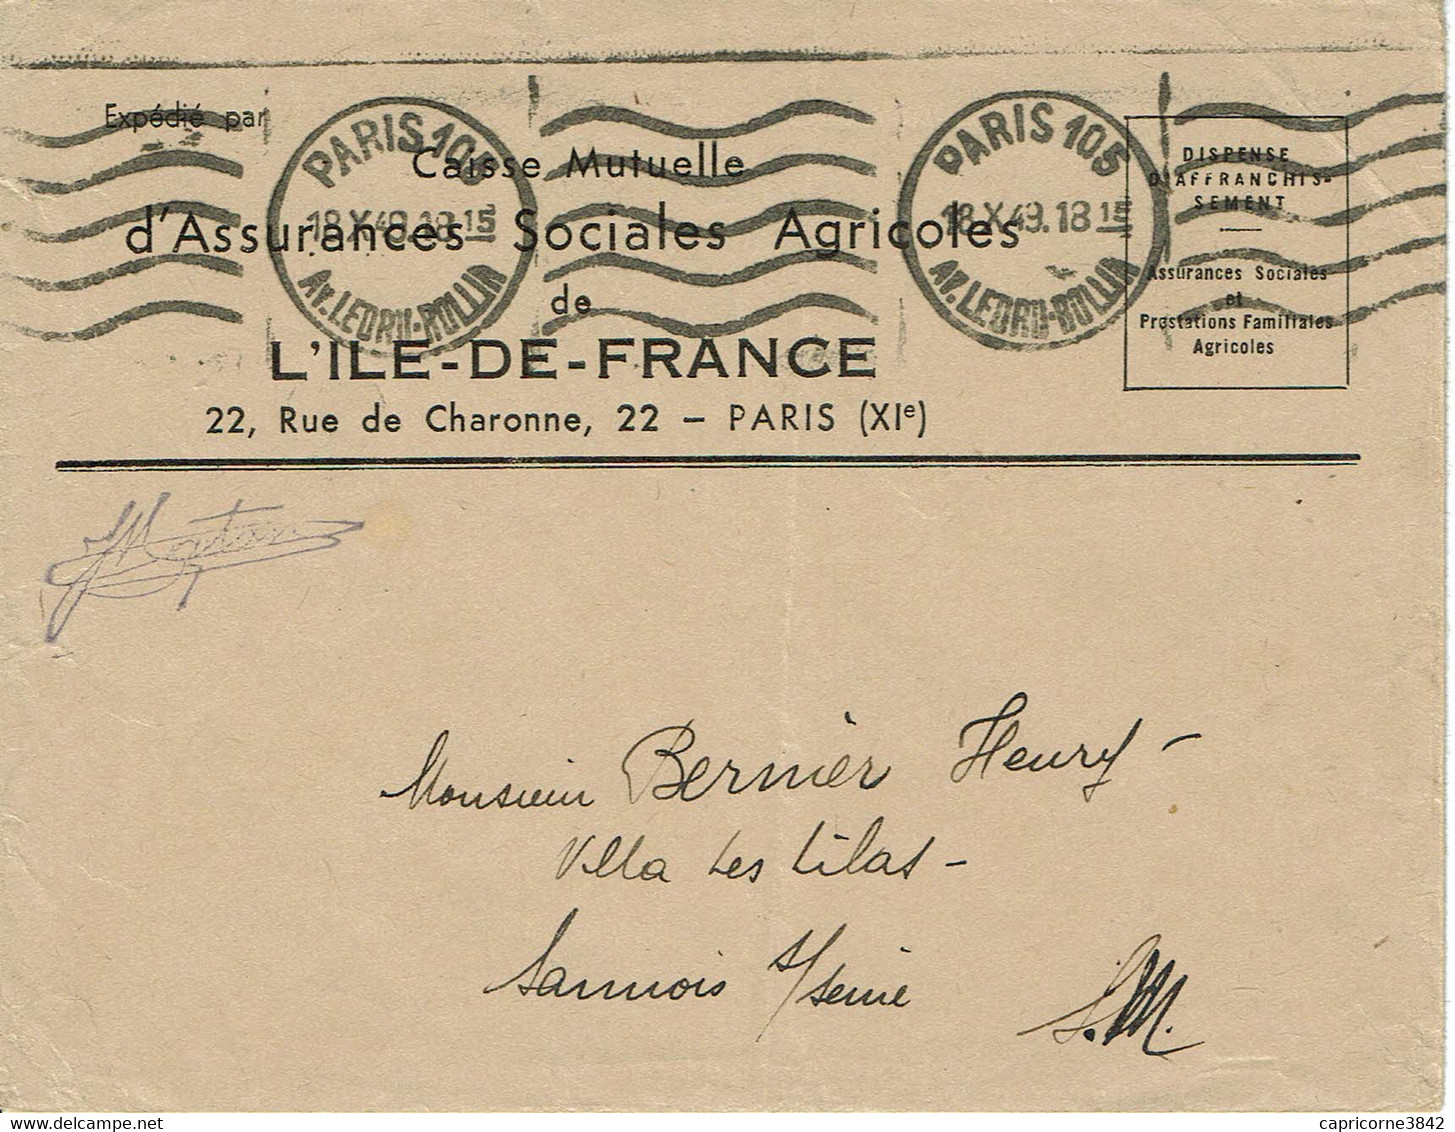 1943 - Lettre En Franchise Postale De La Caisse Mutuelle D'Assurances Sociales Agricoles - Oblit. Machine KRAG - Lettres Civiles En Franchise